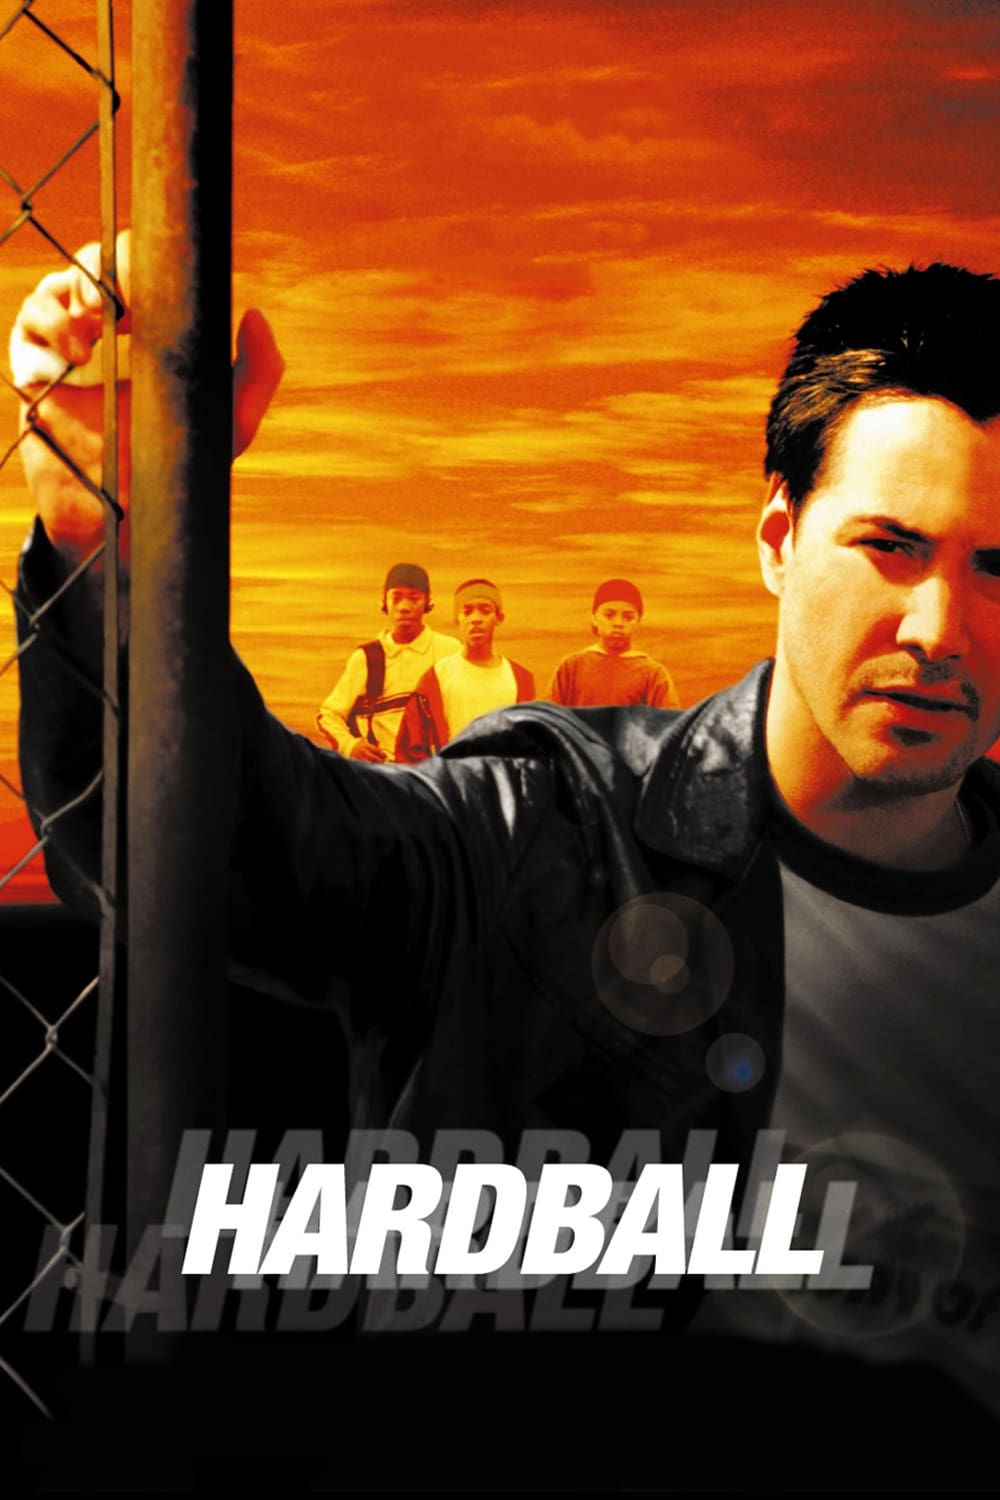 دانلود صوت دوبله فیلم Hardball